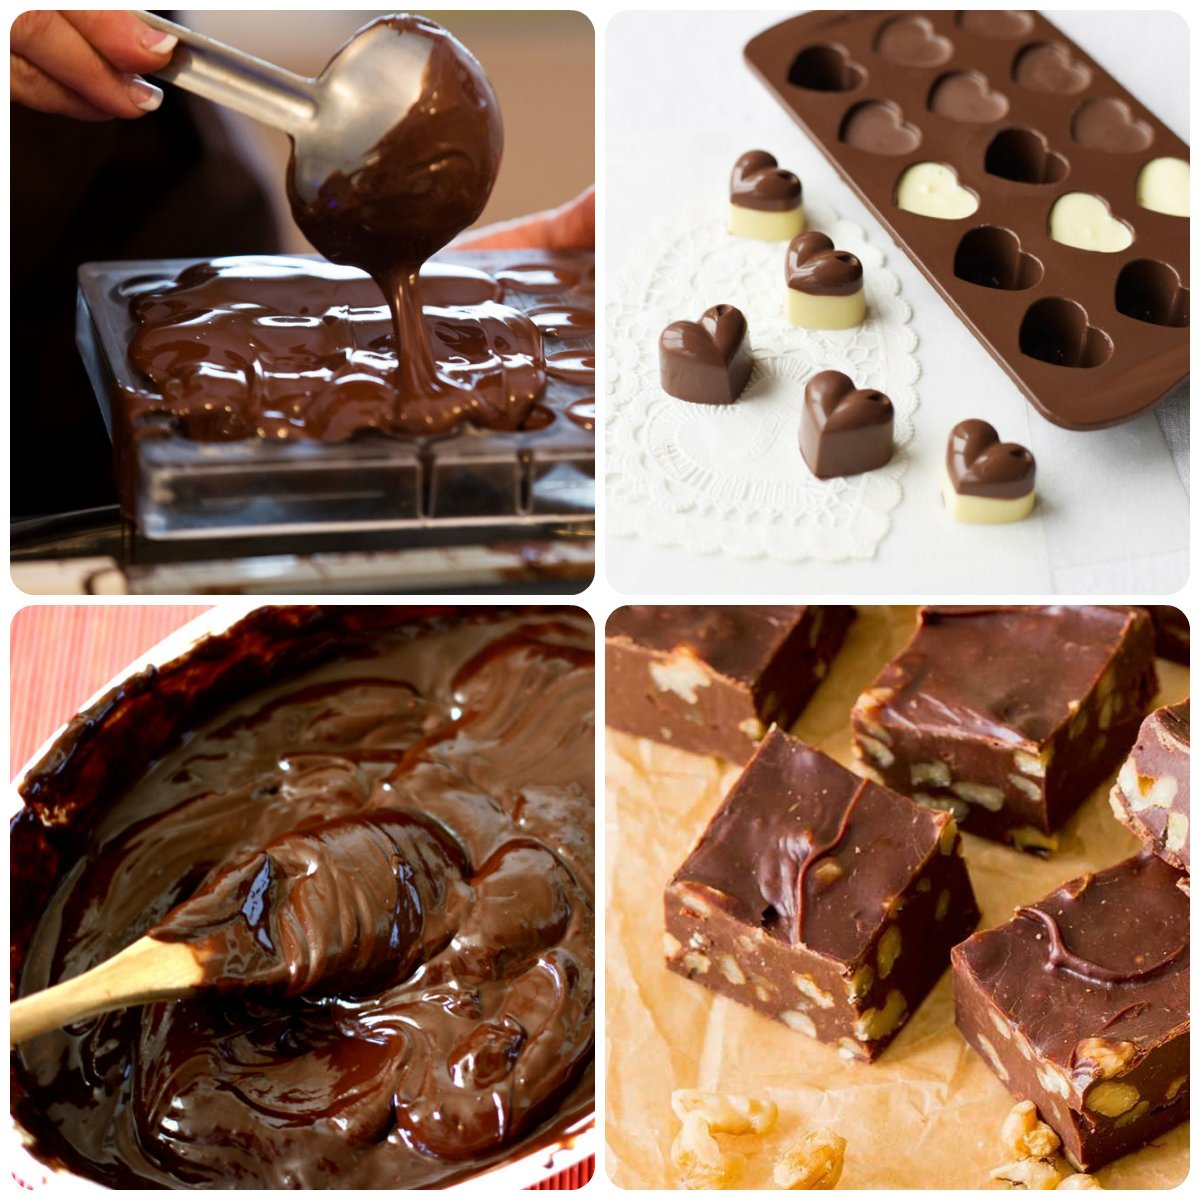 Рецепт домашнего шоколада с маслом. Шоколад своими руками. Сладости домашнего приготовления. Домашний шоколад и конфеты. Конфеты домашнего приготовления шоколадные.